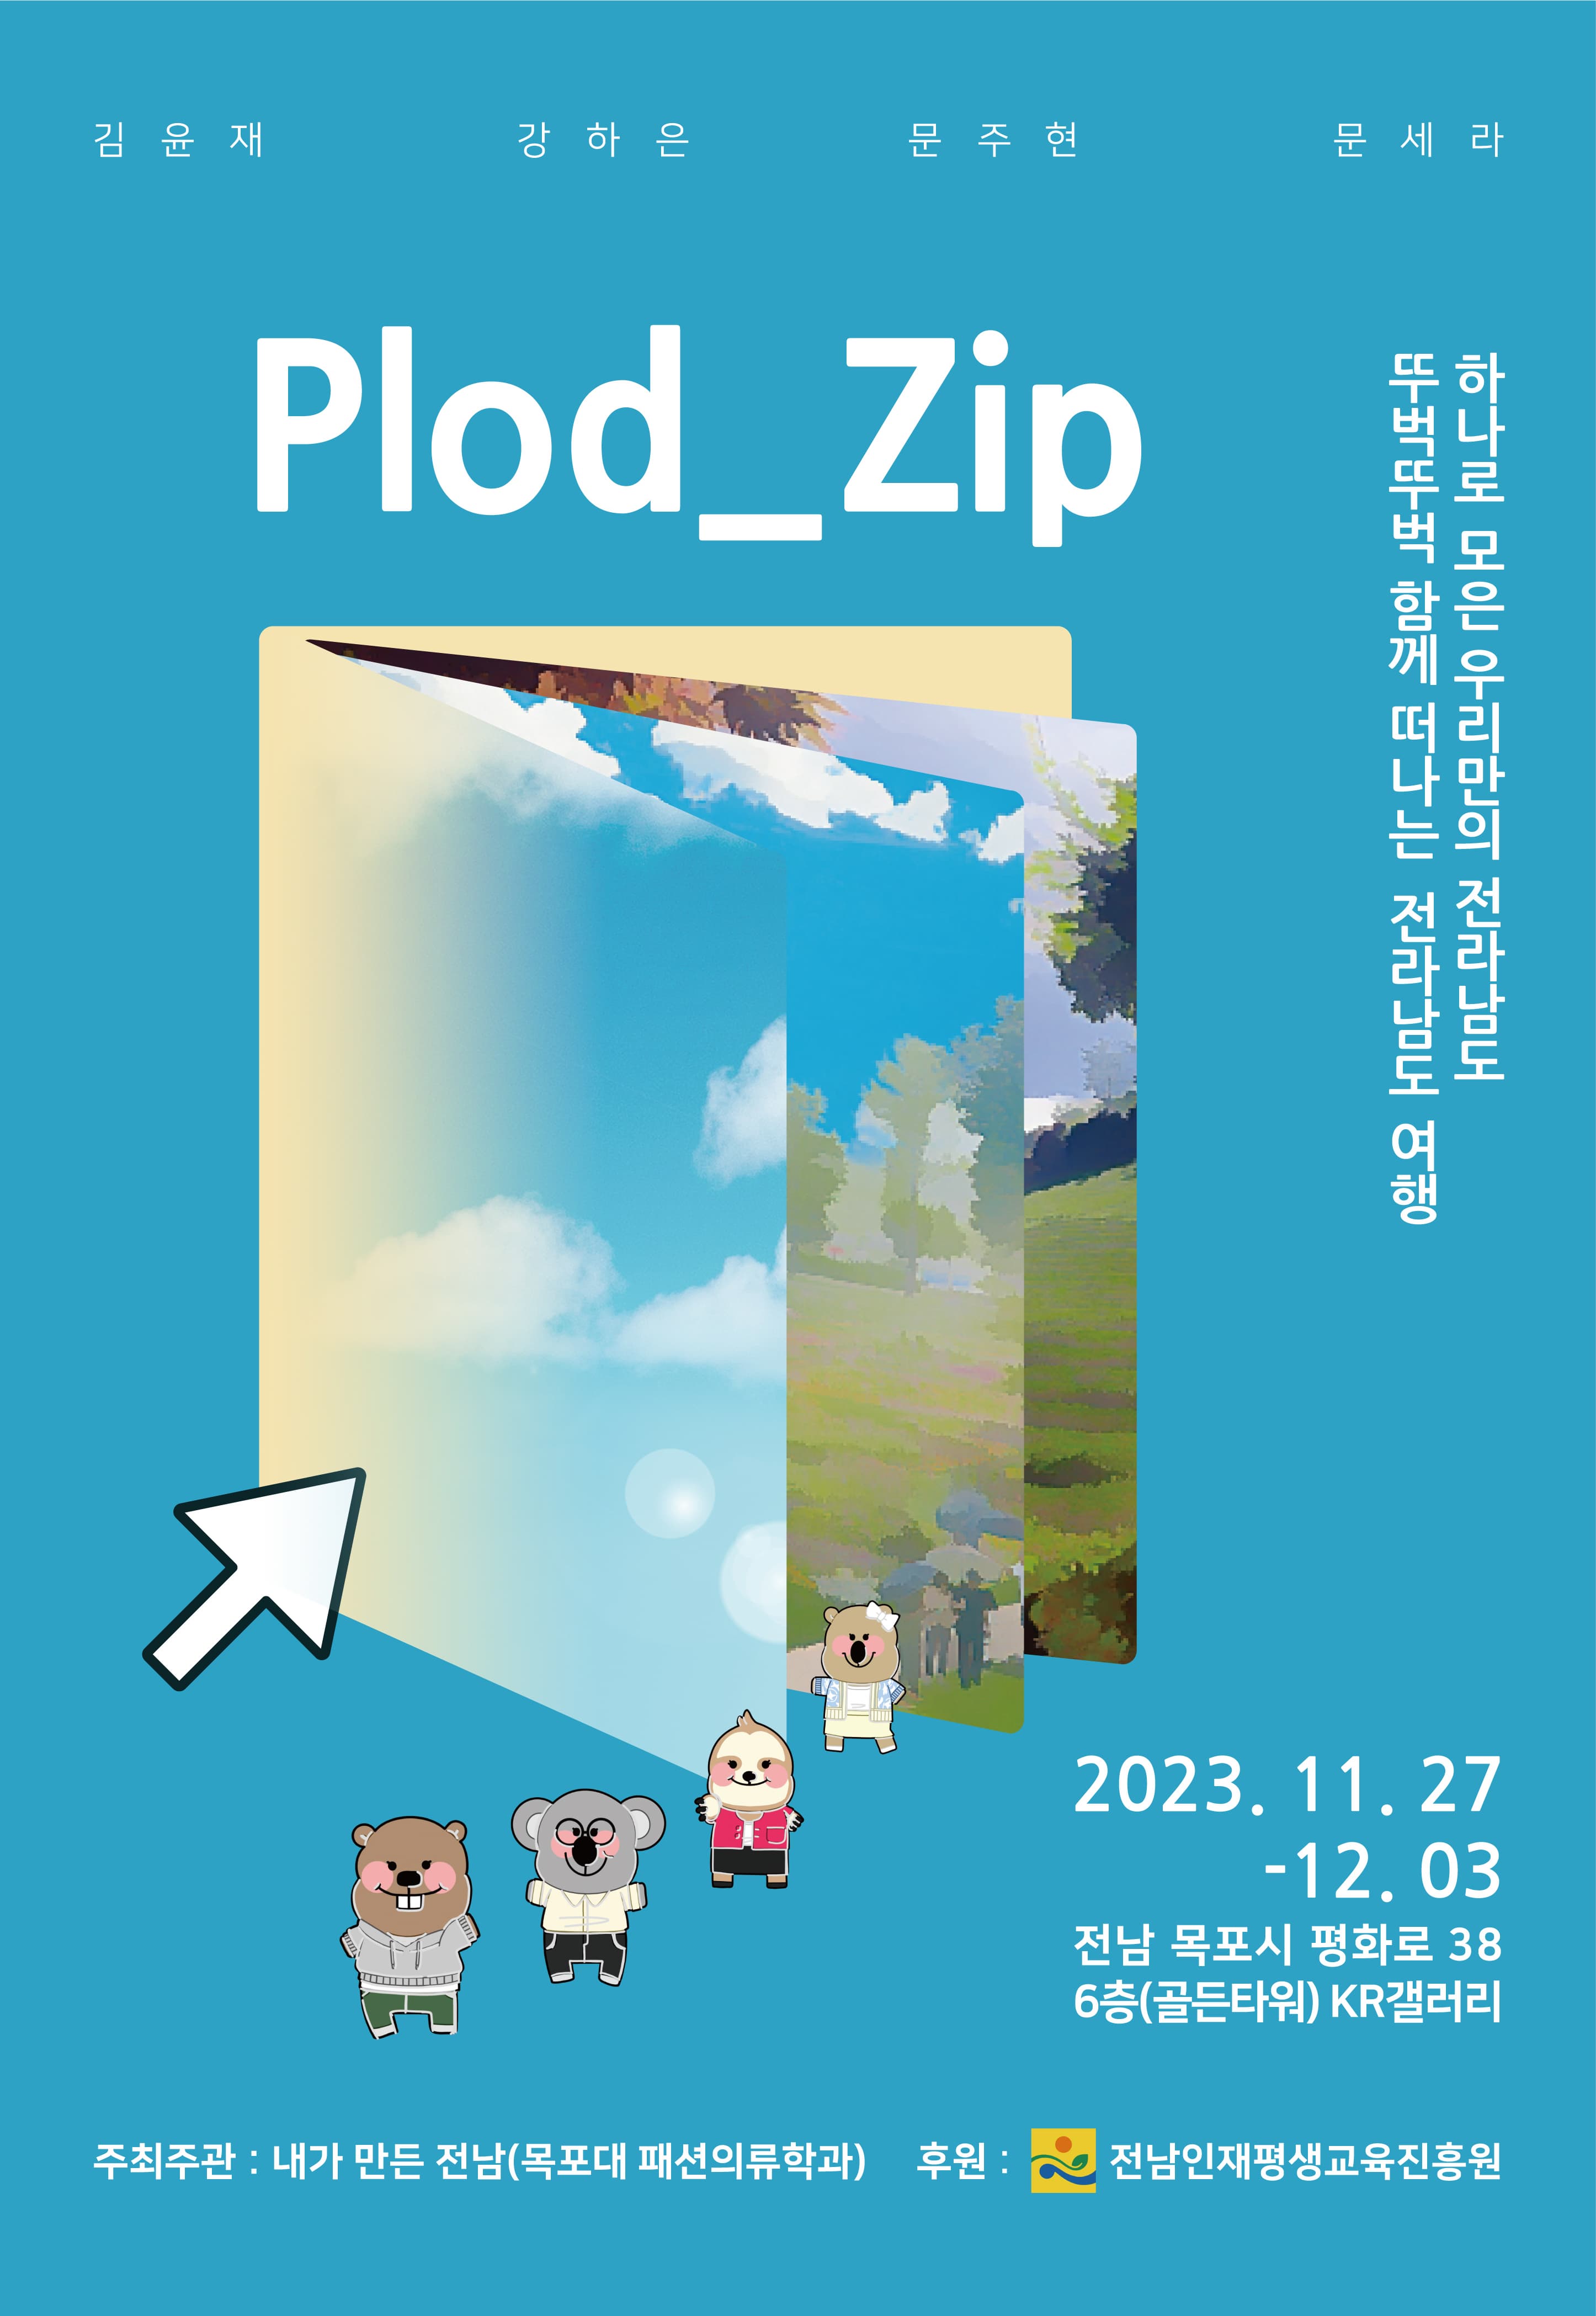 Plod_Zip 전시회 | 2023년 11월 27일 - 12월 3일 | 목포 KR갤러리